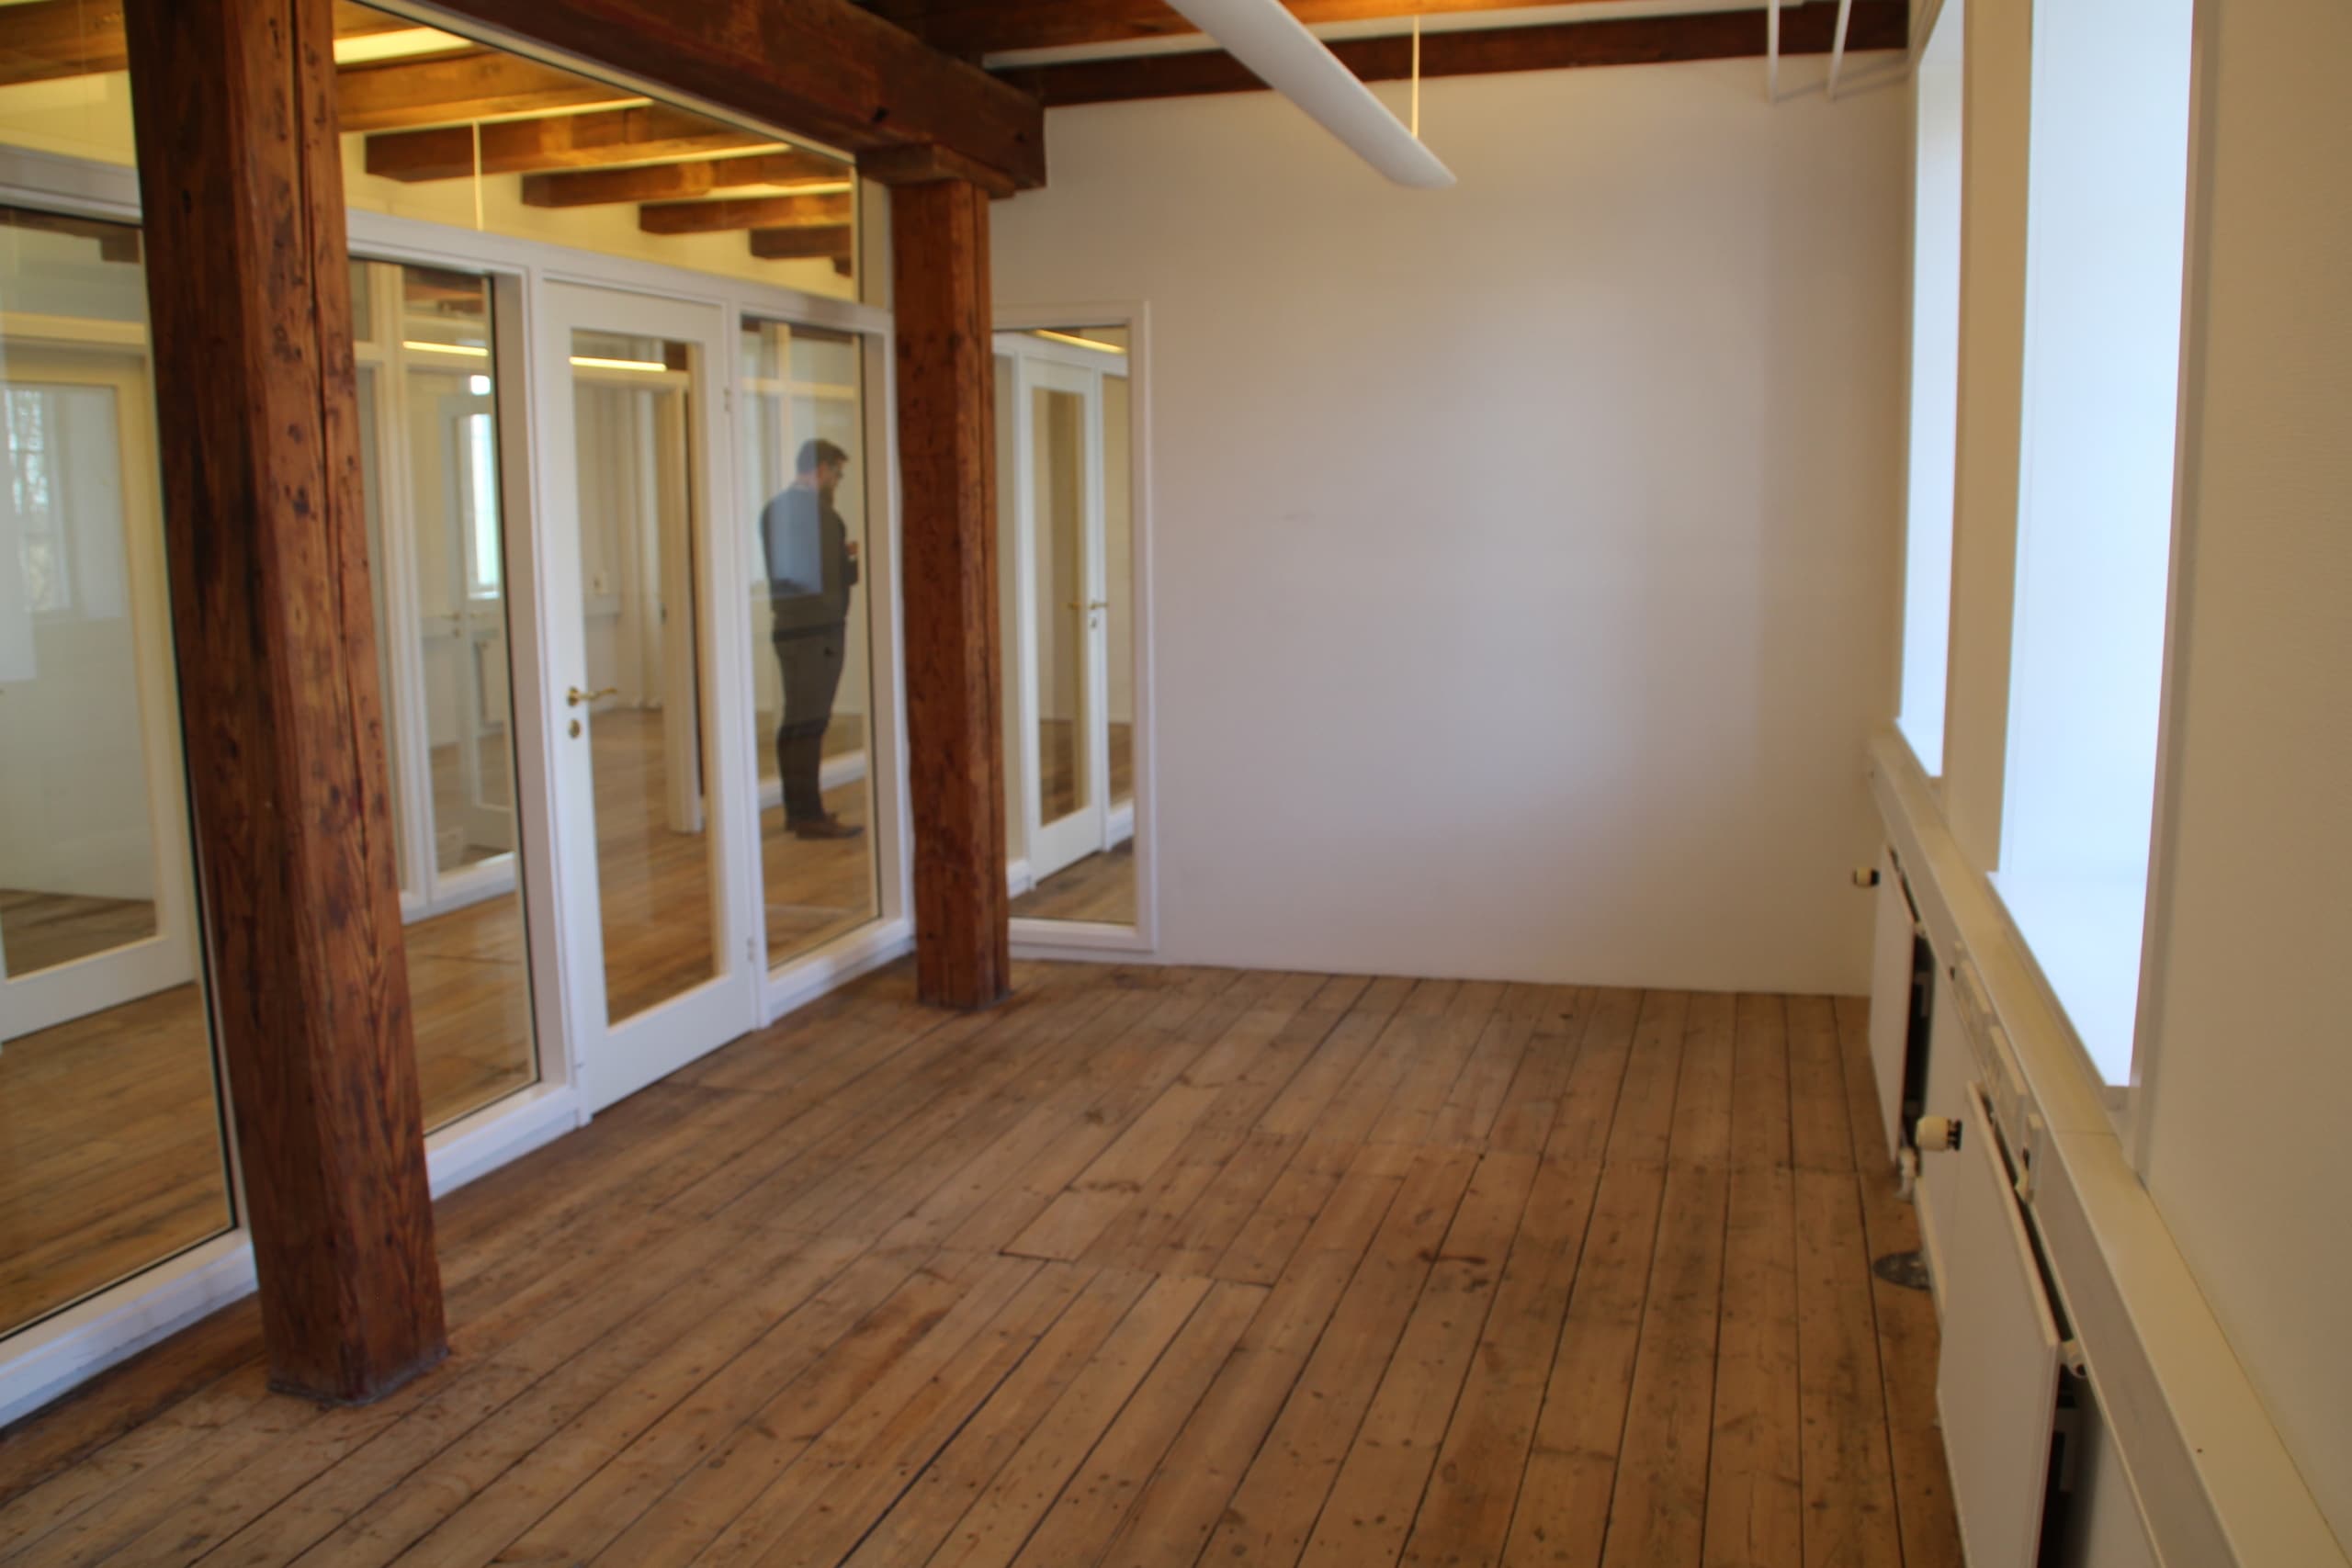 Et lukket kontor i Nivå med plads til cirka 2-3 personer. Det er velegnet til mange typer erhverv.